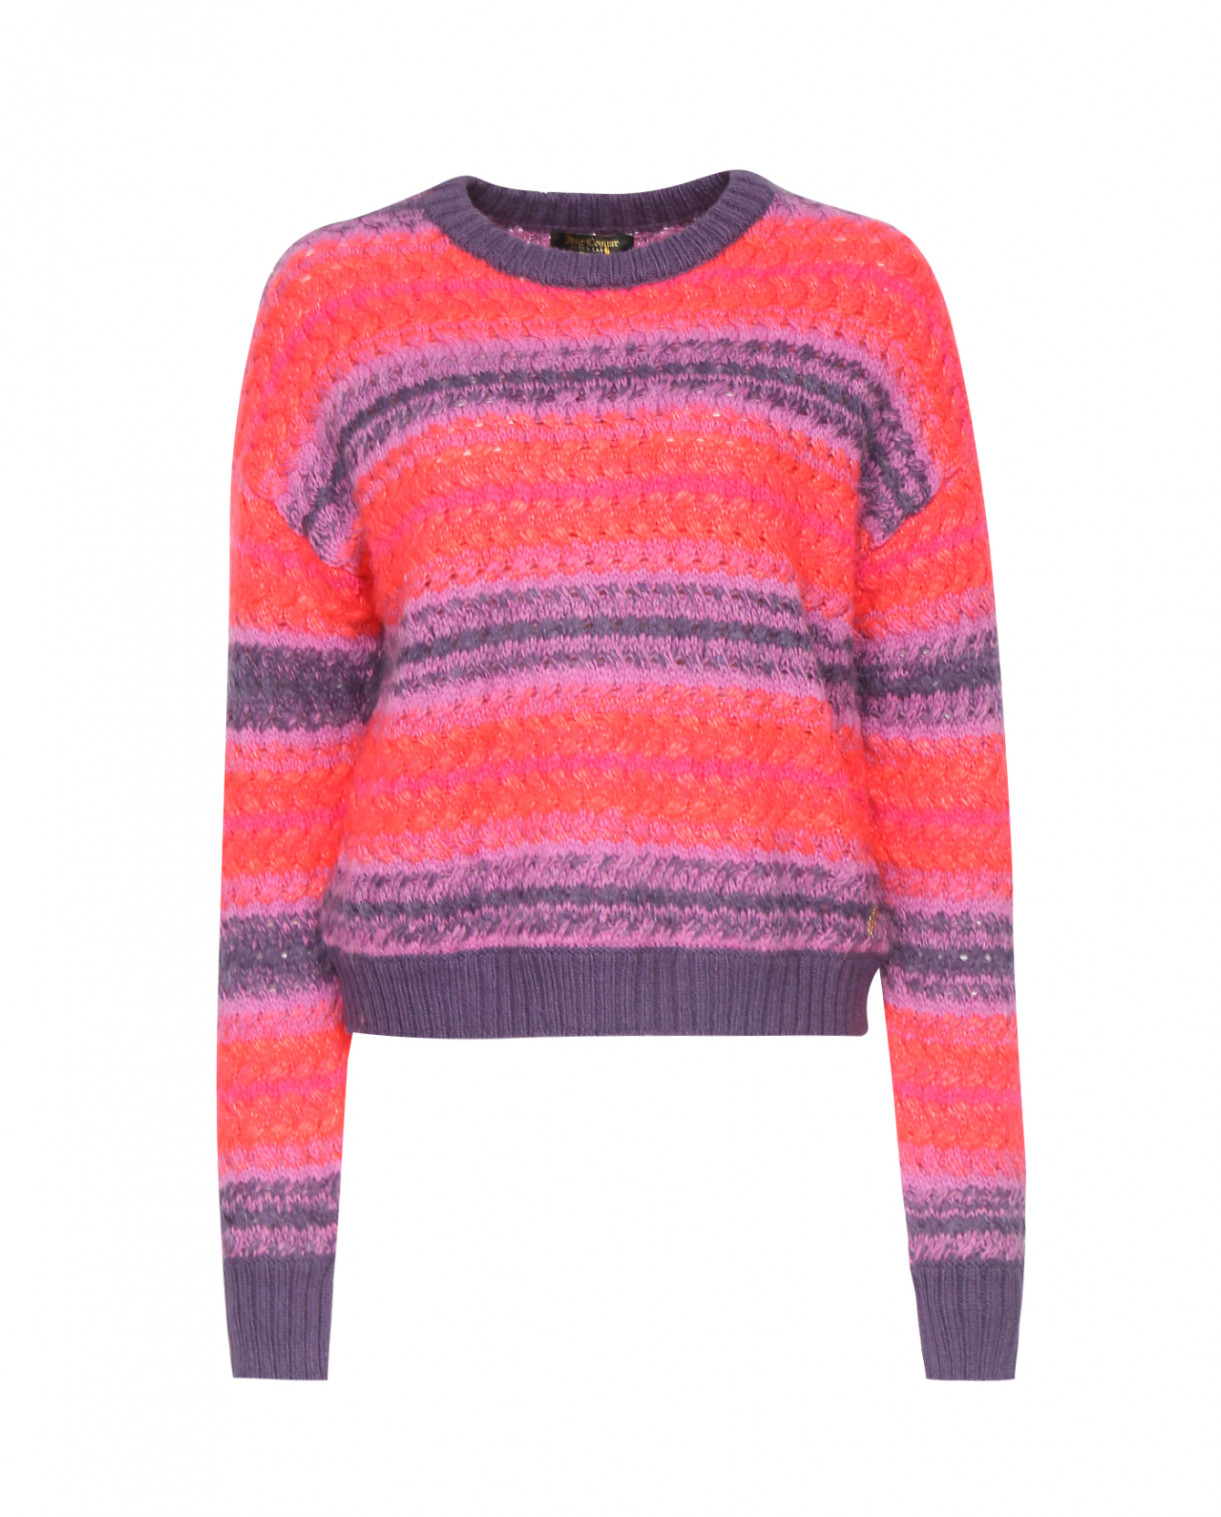 Джемпер из шерсти крупной вязки с узором Juicy Couture  –  Общий вид  – Цвет:  Фиолетовый